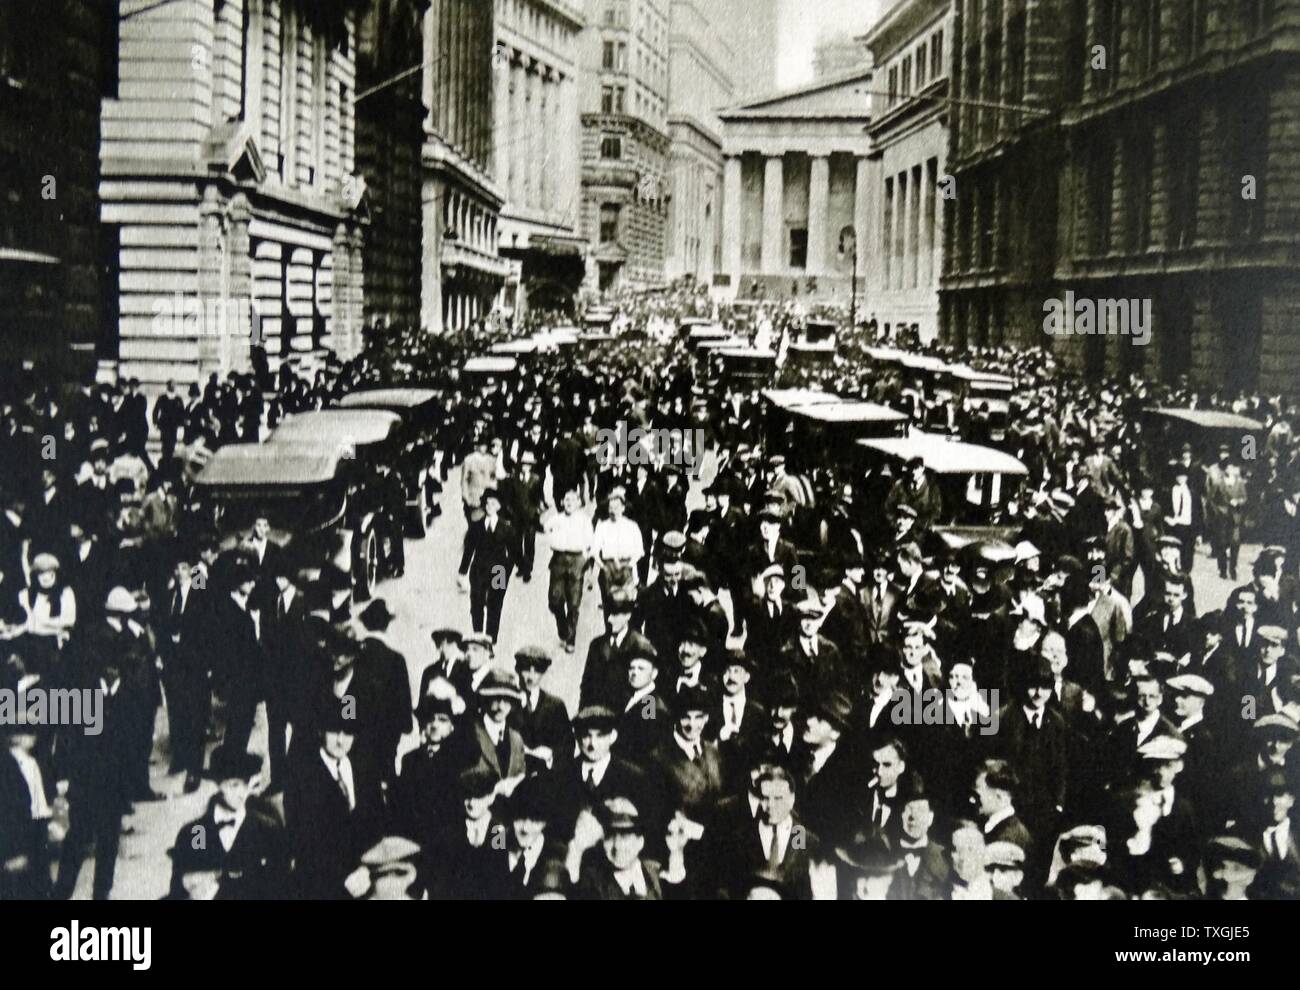 Fotodruck von Menschenmengen sammeln in der Wall Street, New York, zu Beginn der Wall Street Crash 1929. Vom 20. Jahrhundert Stockfoto